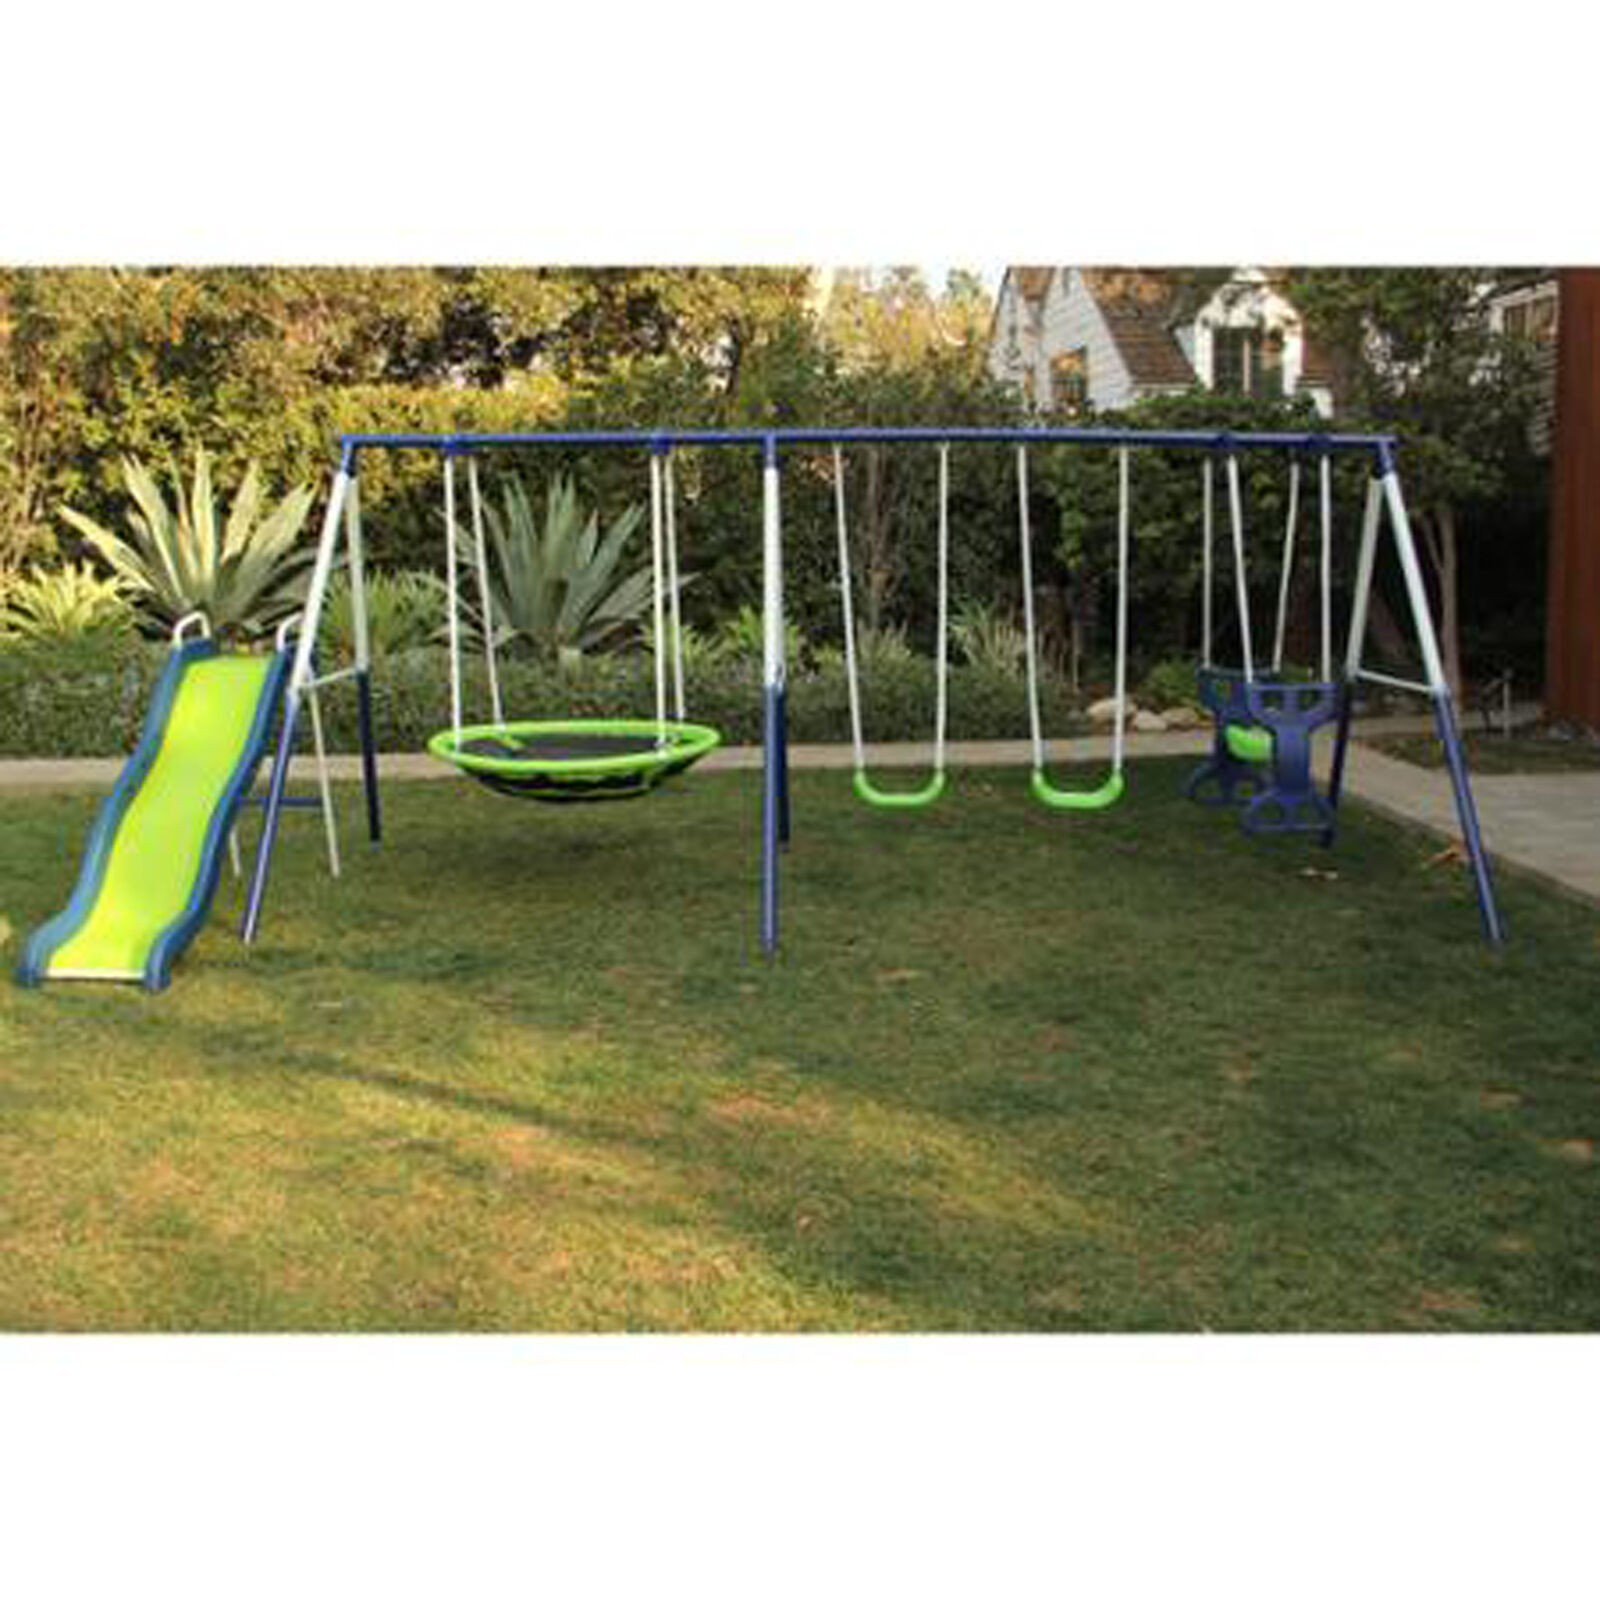 Swing set playground metal swingset backyard playset